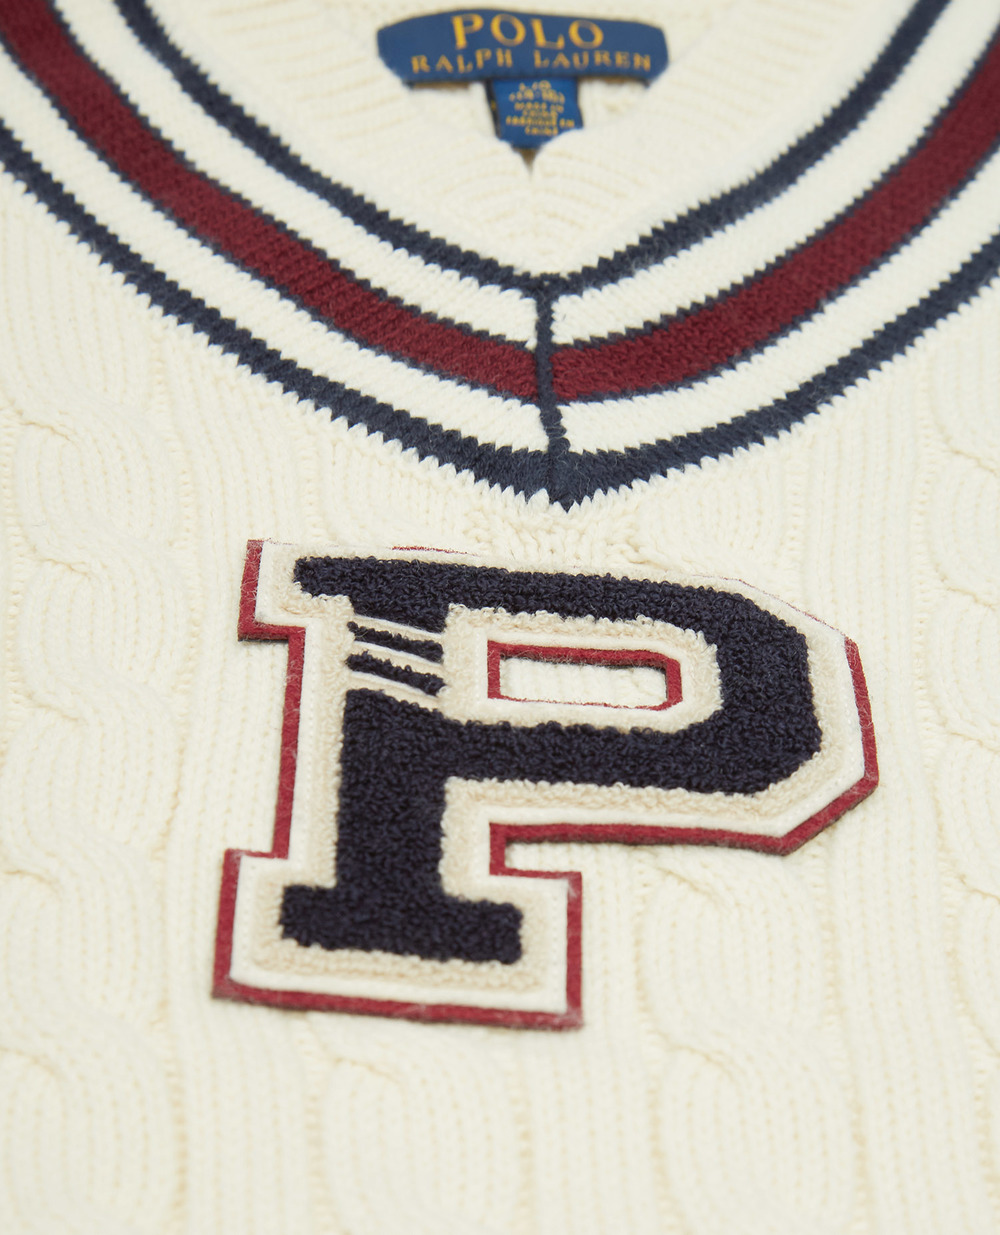 Пуловер Polo Ralph Lauren Kids 323799438001, белый цвет • Купить в интернет-магазине Kameron